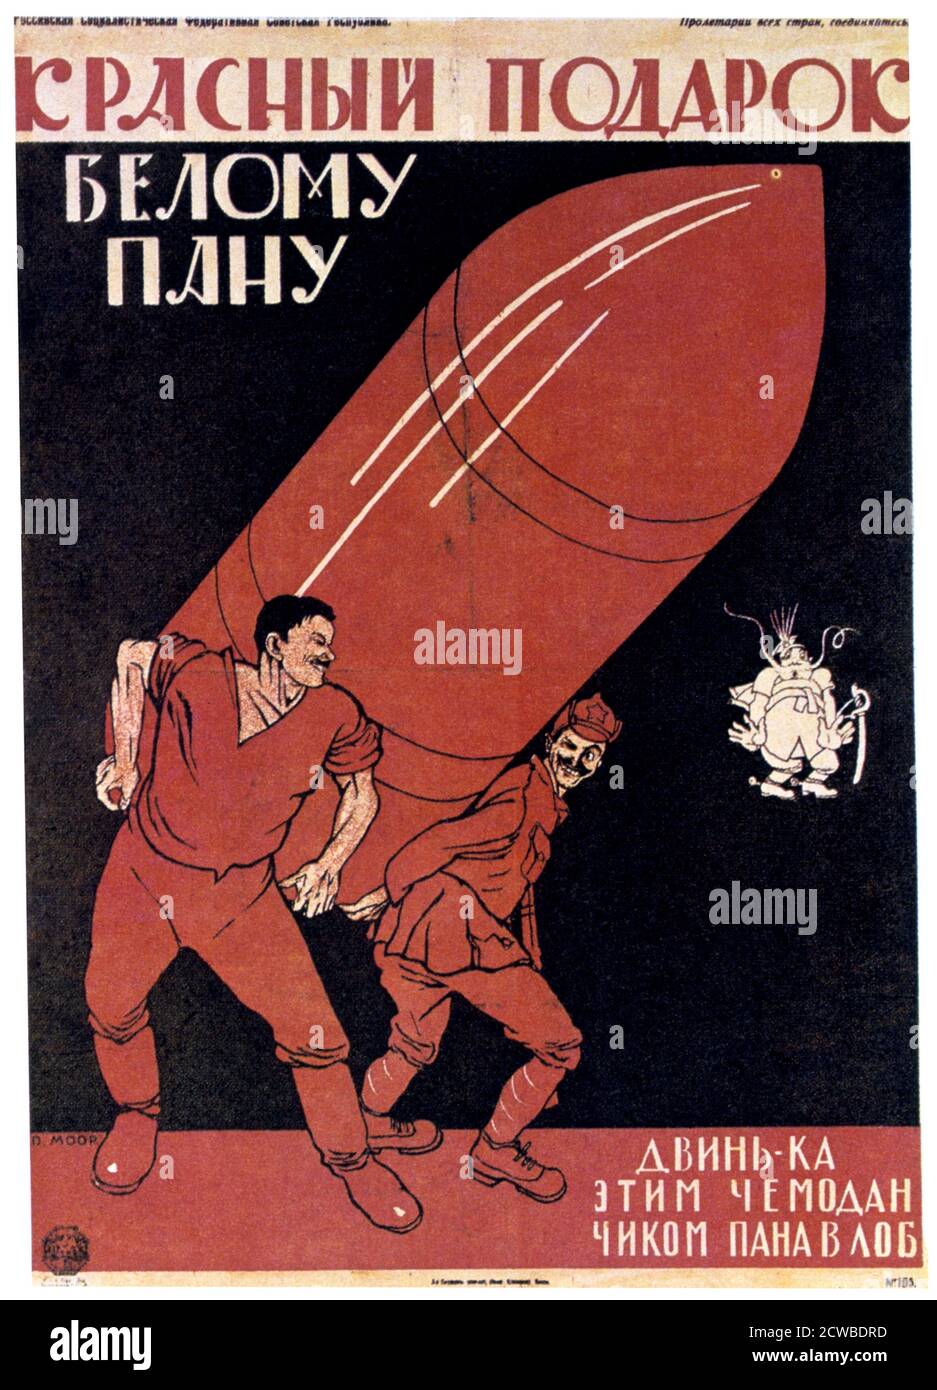 Un regalo rosso a un Maestro Bianco', 1920. Artista: Dmitriy Stakhievich Moor. Un artista russo ha notato per i suoi manifesti di propaganda. Foto Stock